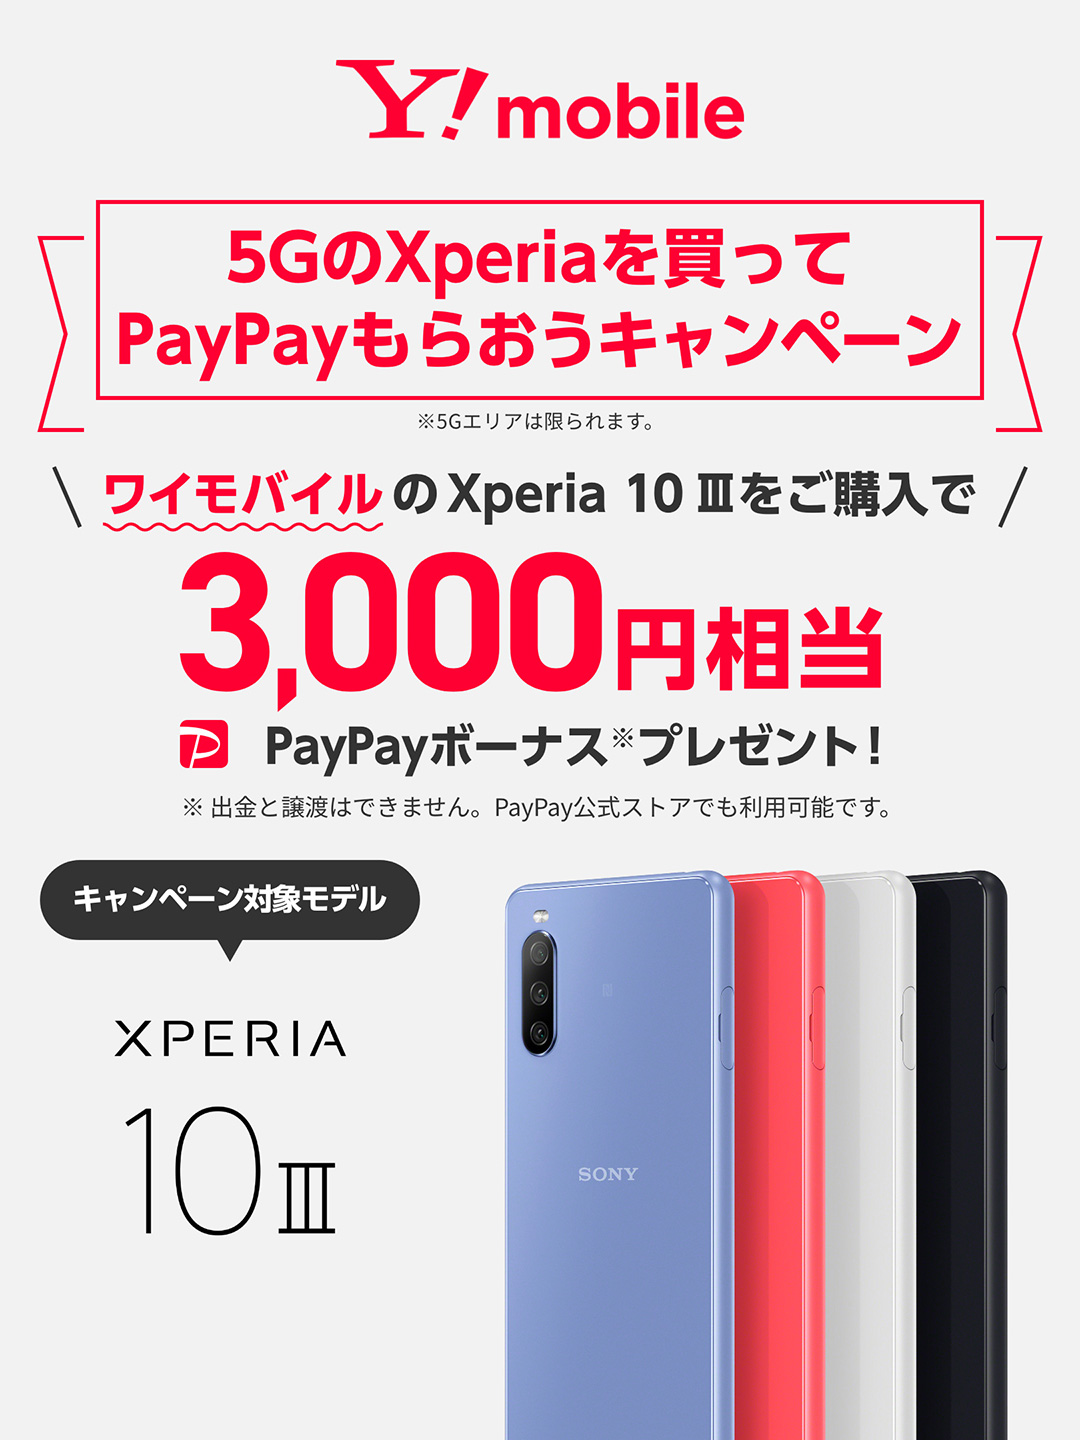 5GのXperiaを買ってPayPayもらおうキャンペーン※5Gエリアは限られます。 ワイモバイルのXperia 10 IIIをご購入で3,000円相当PayPayボーナス※プレゼント！※出金と譲渡はできません。PayPay公式ストアでも利用可能です。